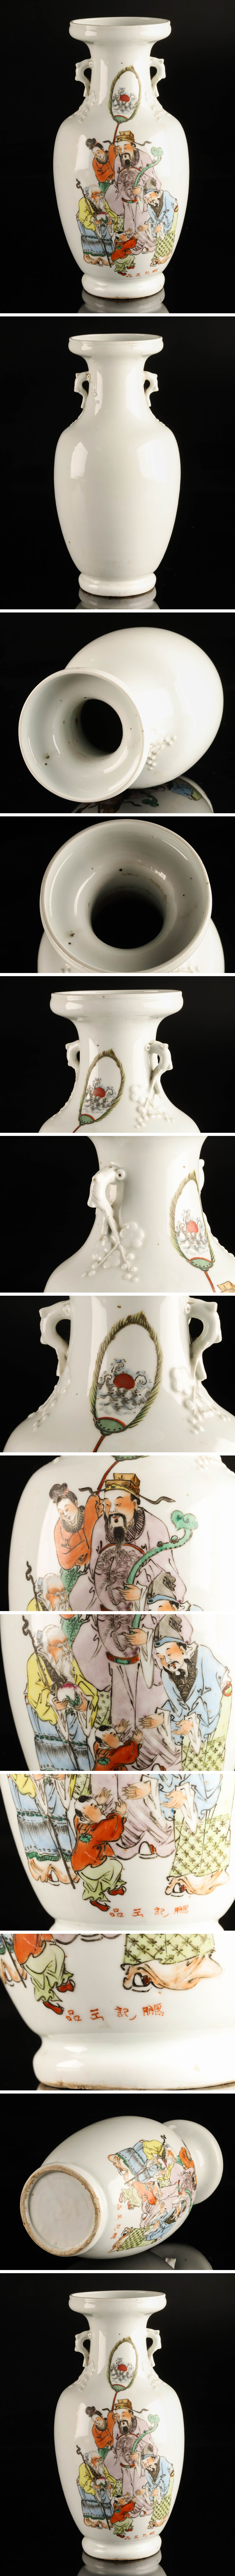 【大得価】【琴》送料無料 中国美術 色絵人物文花瓶 DC227 色絵磁器